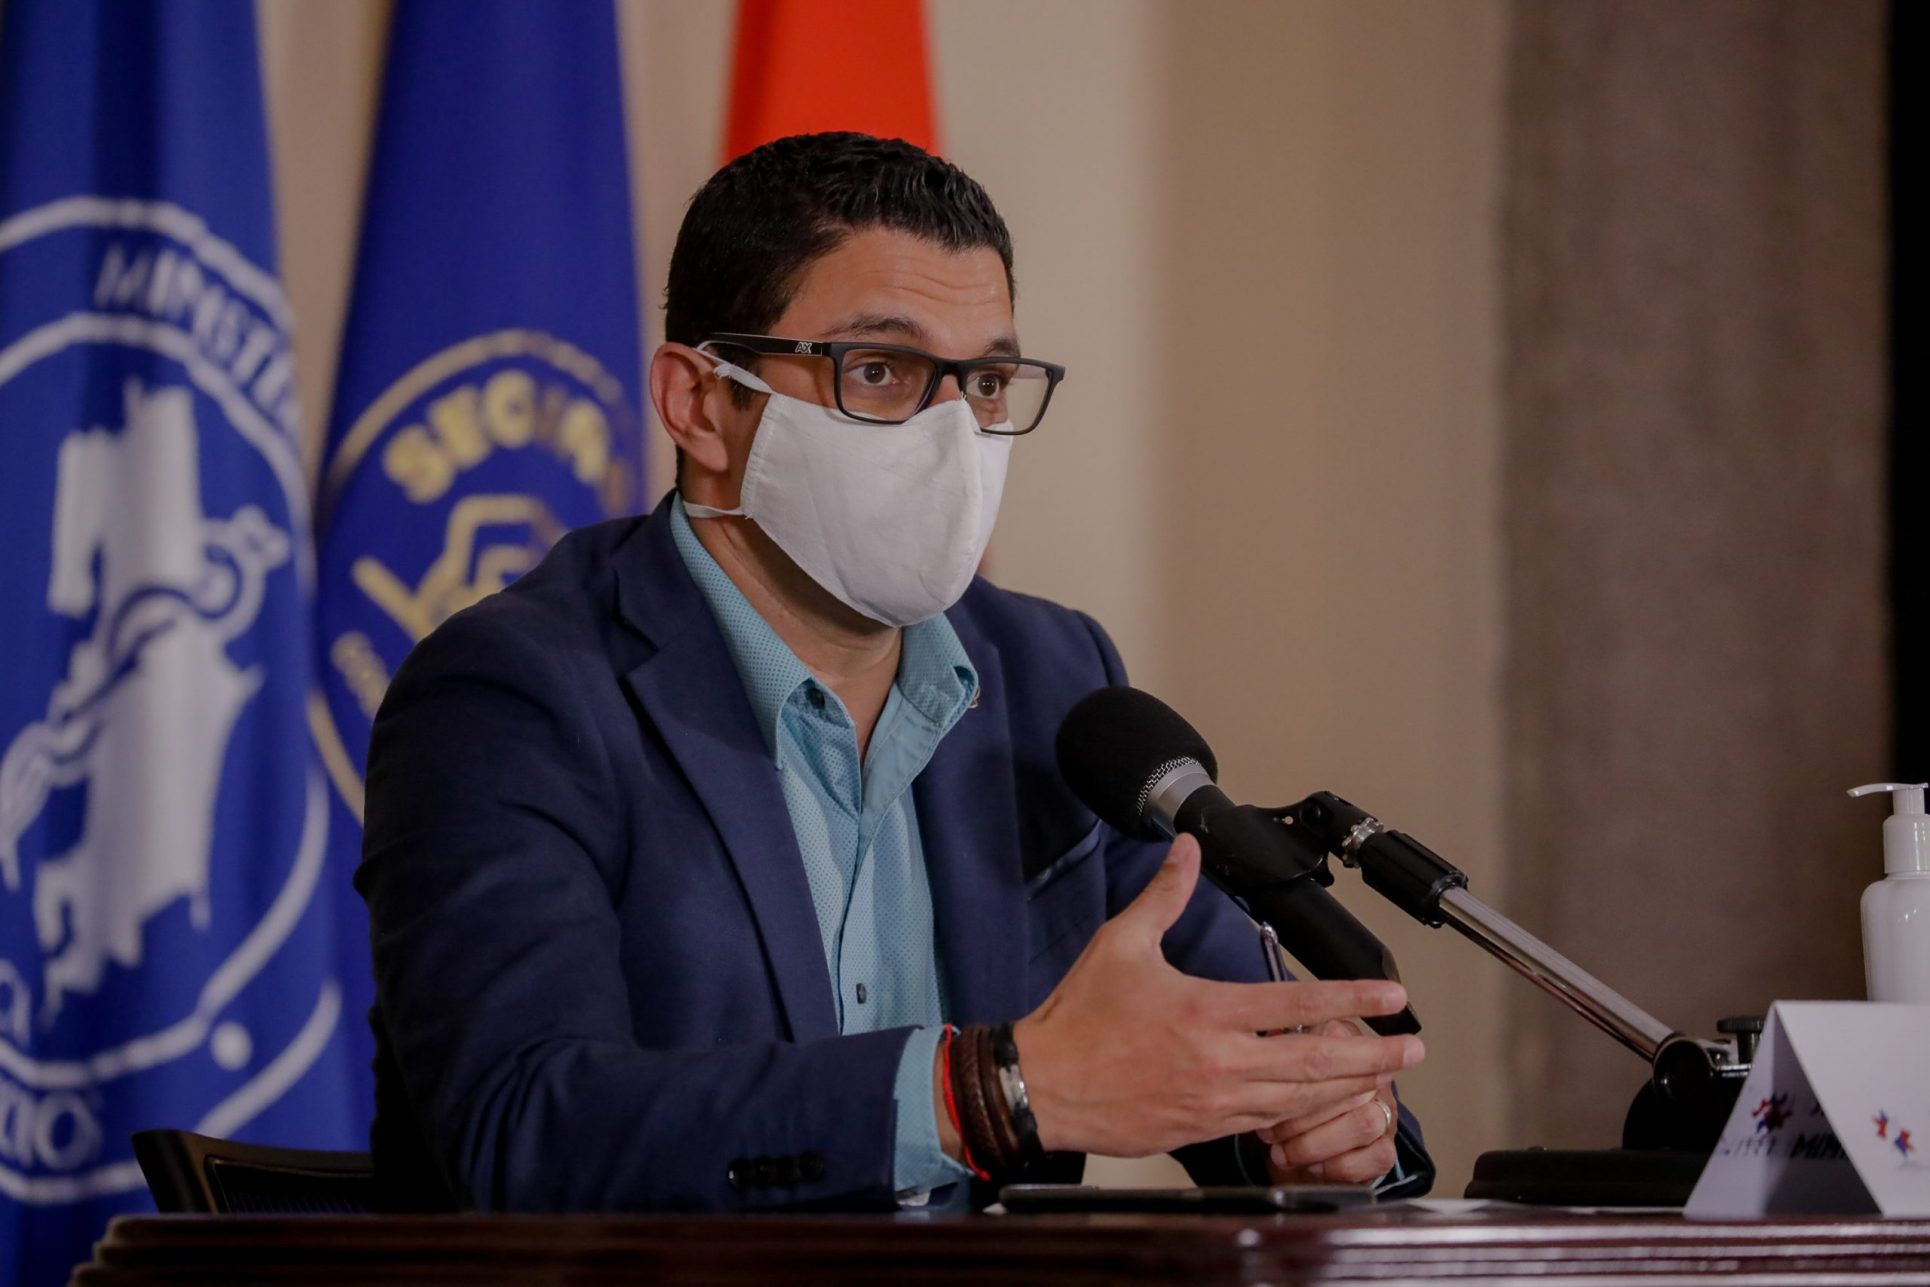 Ante críticas por cierres, jerarca Daniel Salas señala otros ministros: “A mí me corresponde hablar de salud”